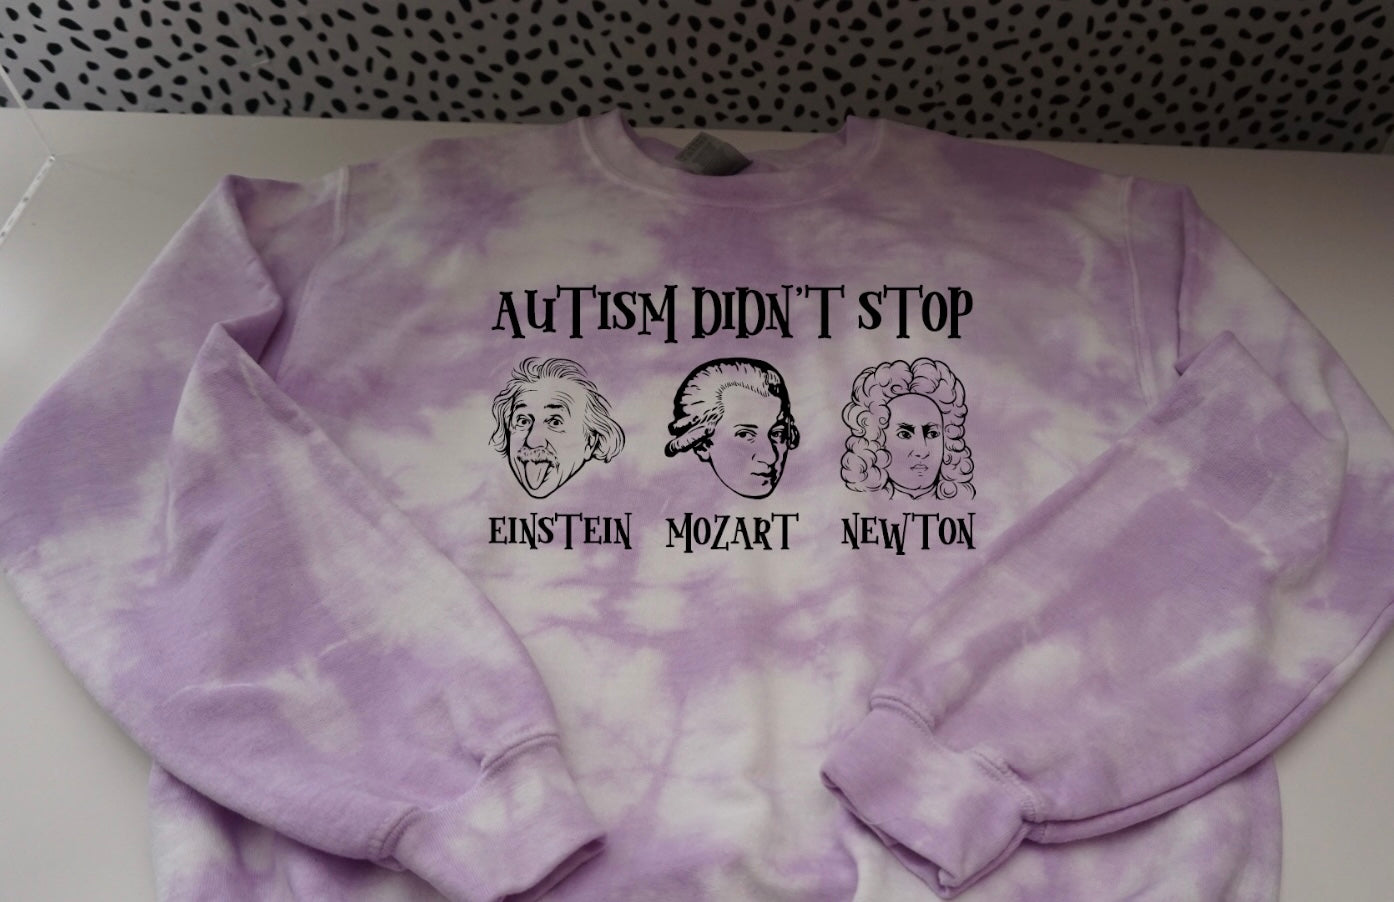 Autism didn’t stop Einstein Mozart Newton